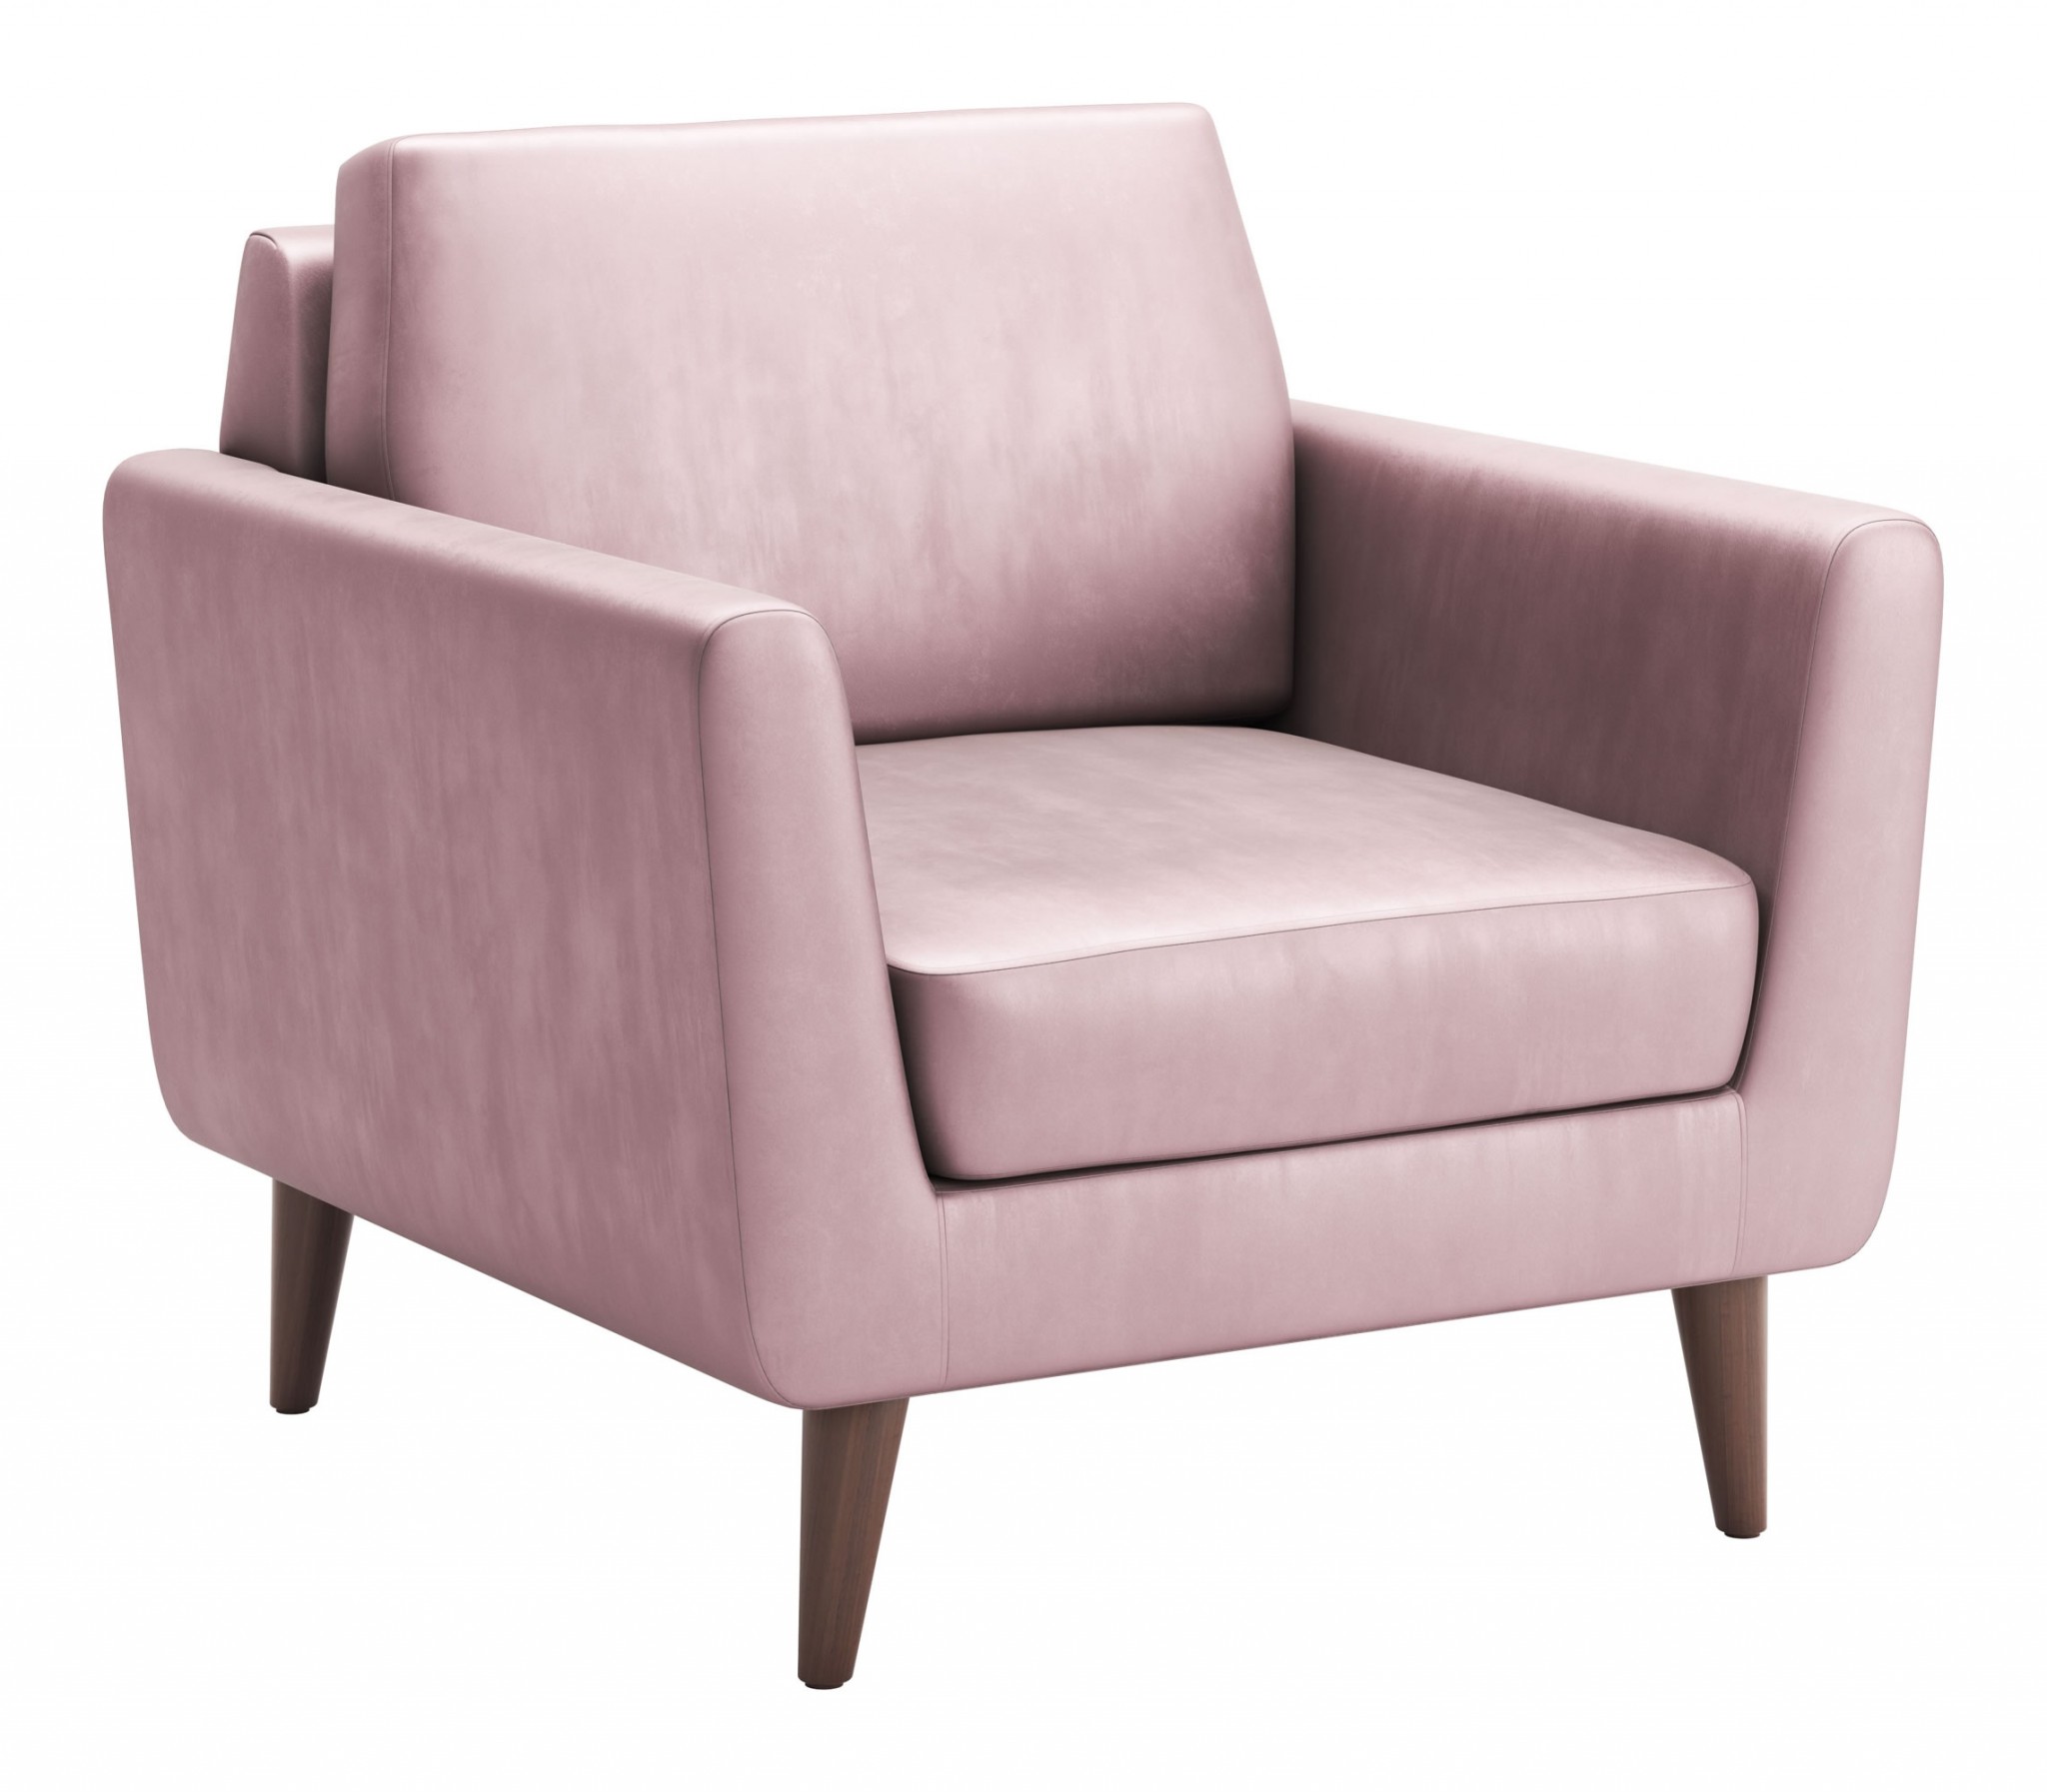 35" x 35" x 37" Pink Velvet, Alder Wood, Foam, Fabric & Fiber, Arm Chair